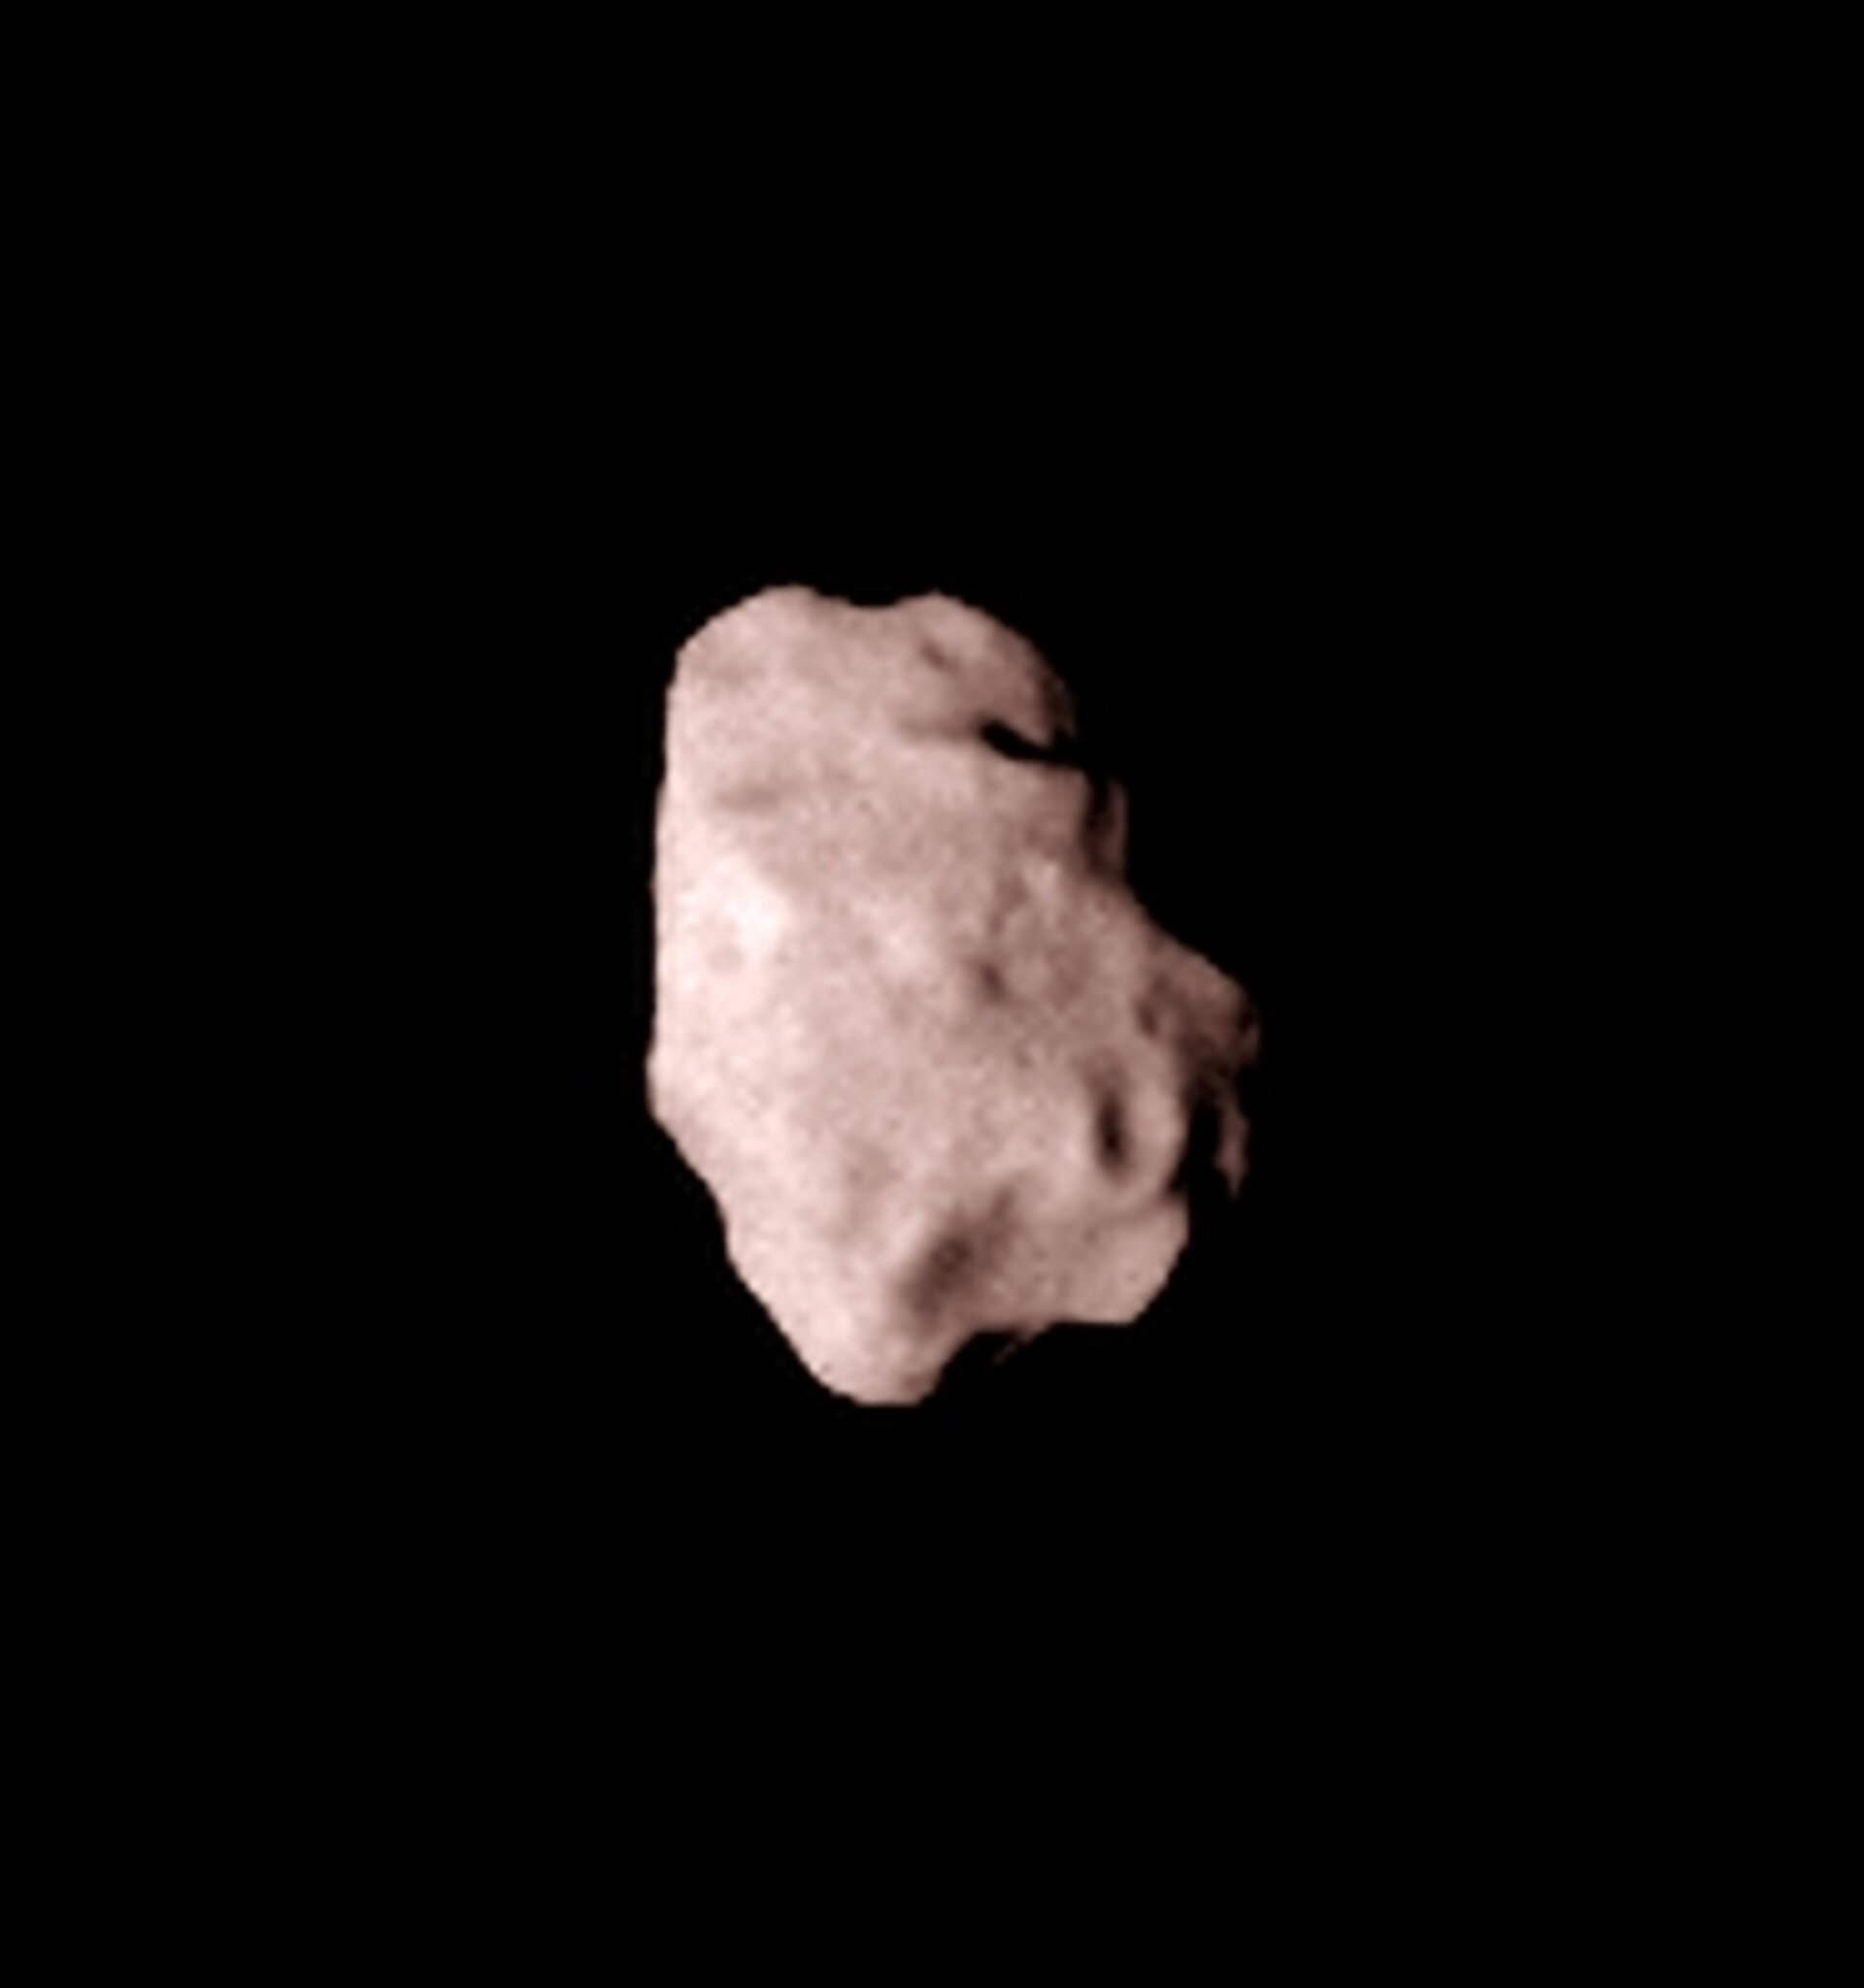 De planetoïde Lutetia (afmetingen 132×101×76 kilometer) in juli 2010 gefotografeerd door ESA's ruimtesonde Rosetta op weg naar de komeet Churyumov-Gerasimenko 